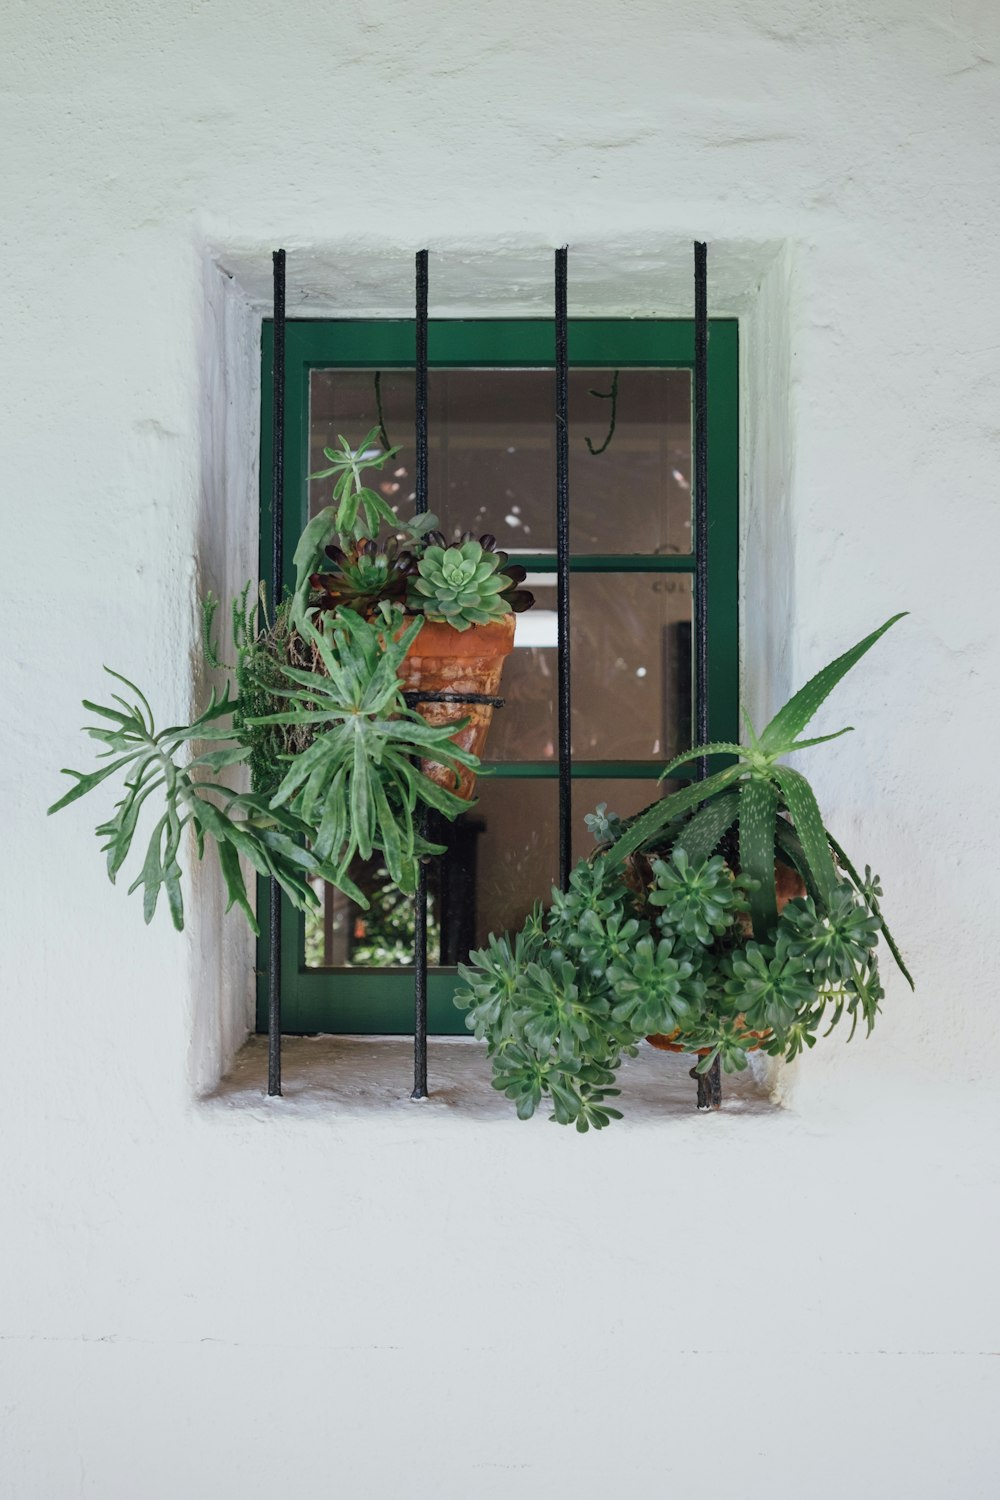 Plantas colgantes en una ventana con marco de metal verde